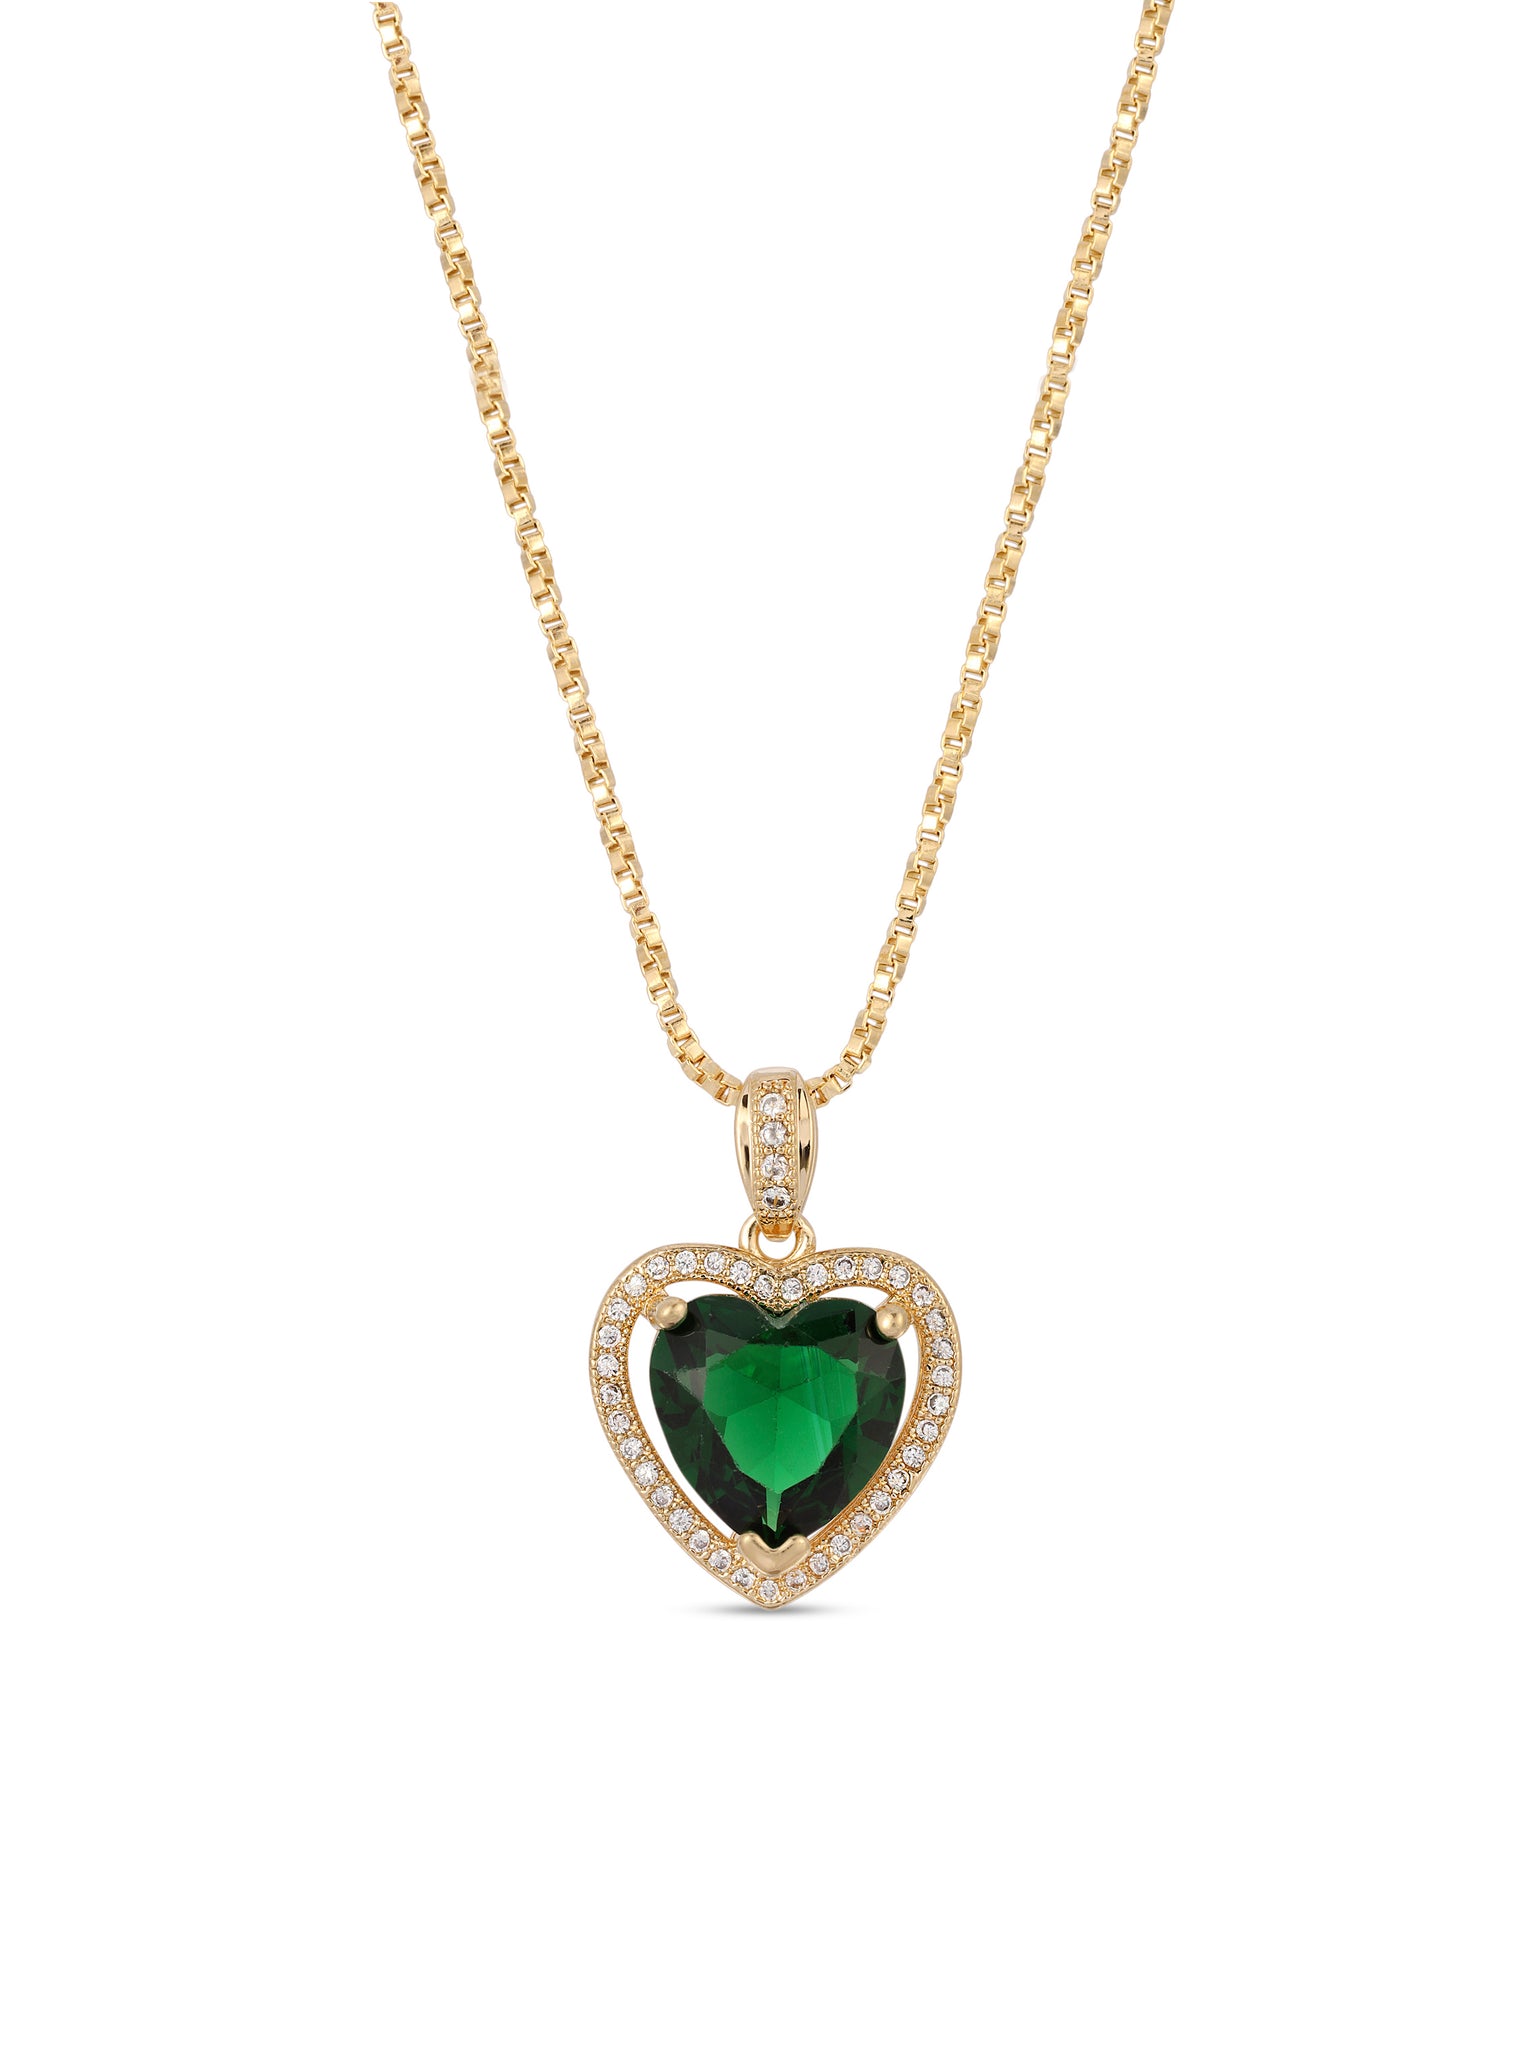 The Mini Heart Necklace - Emerald